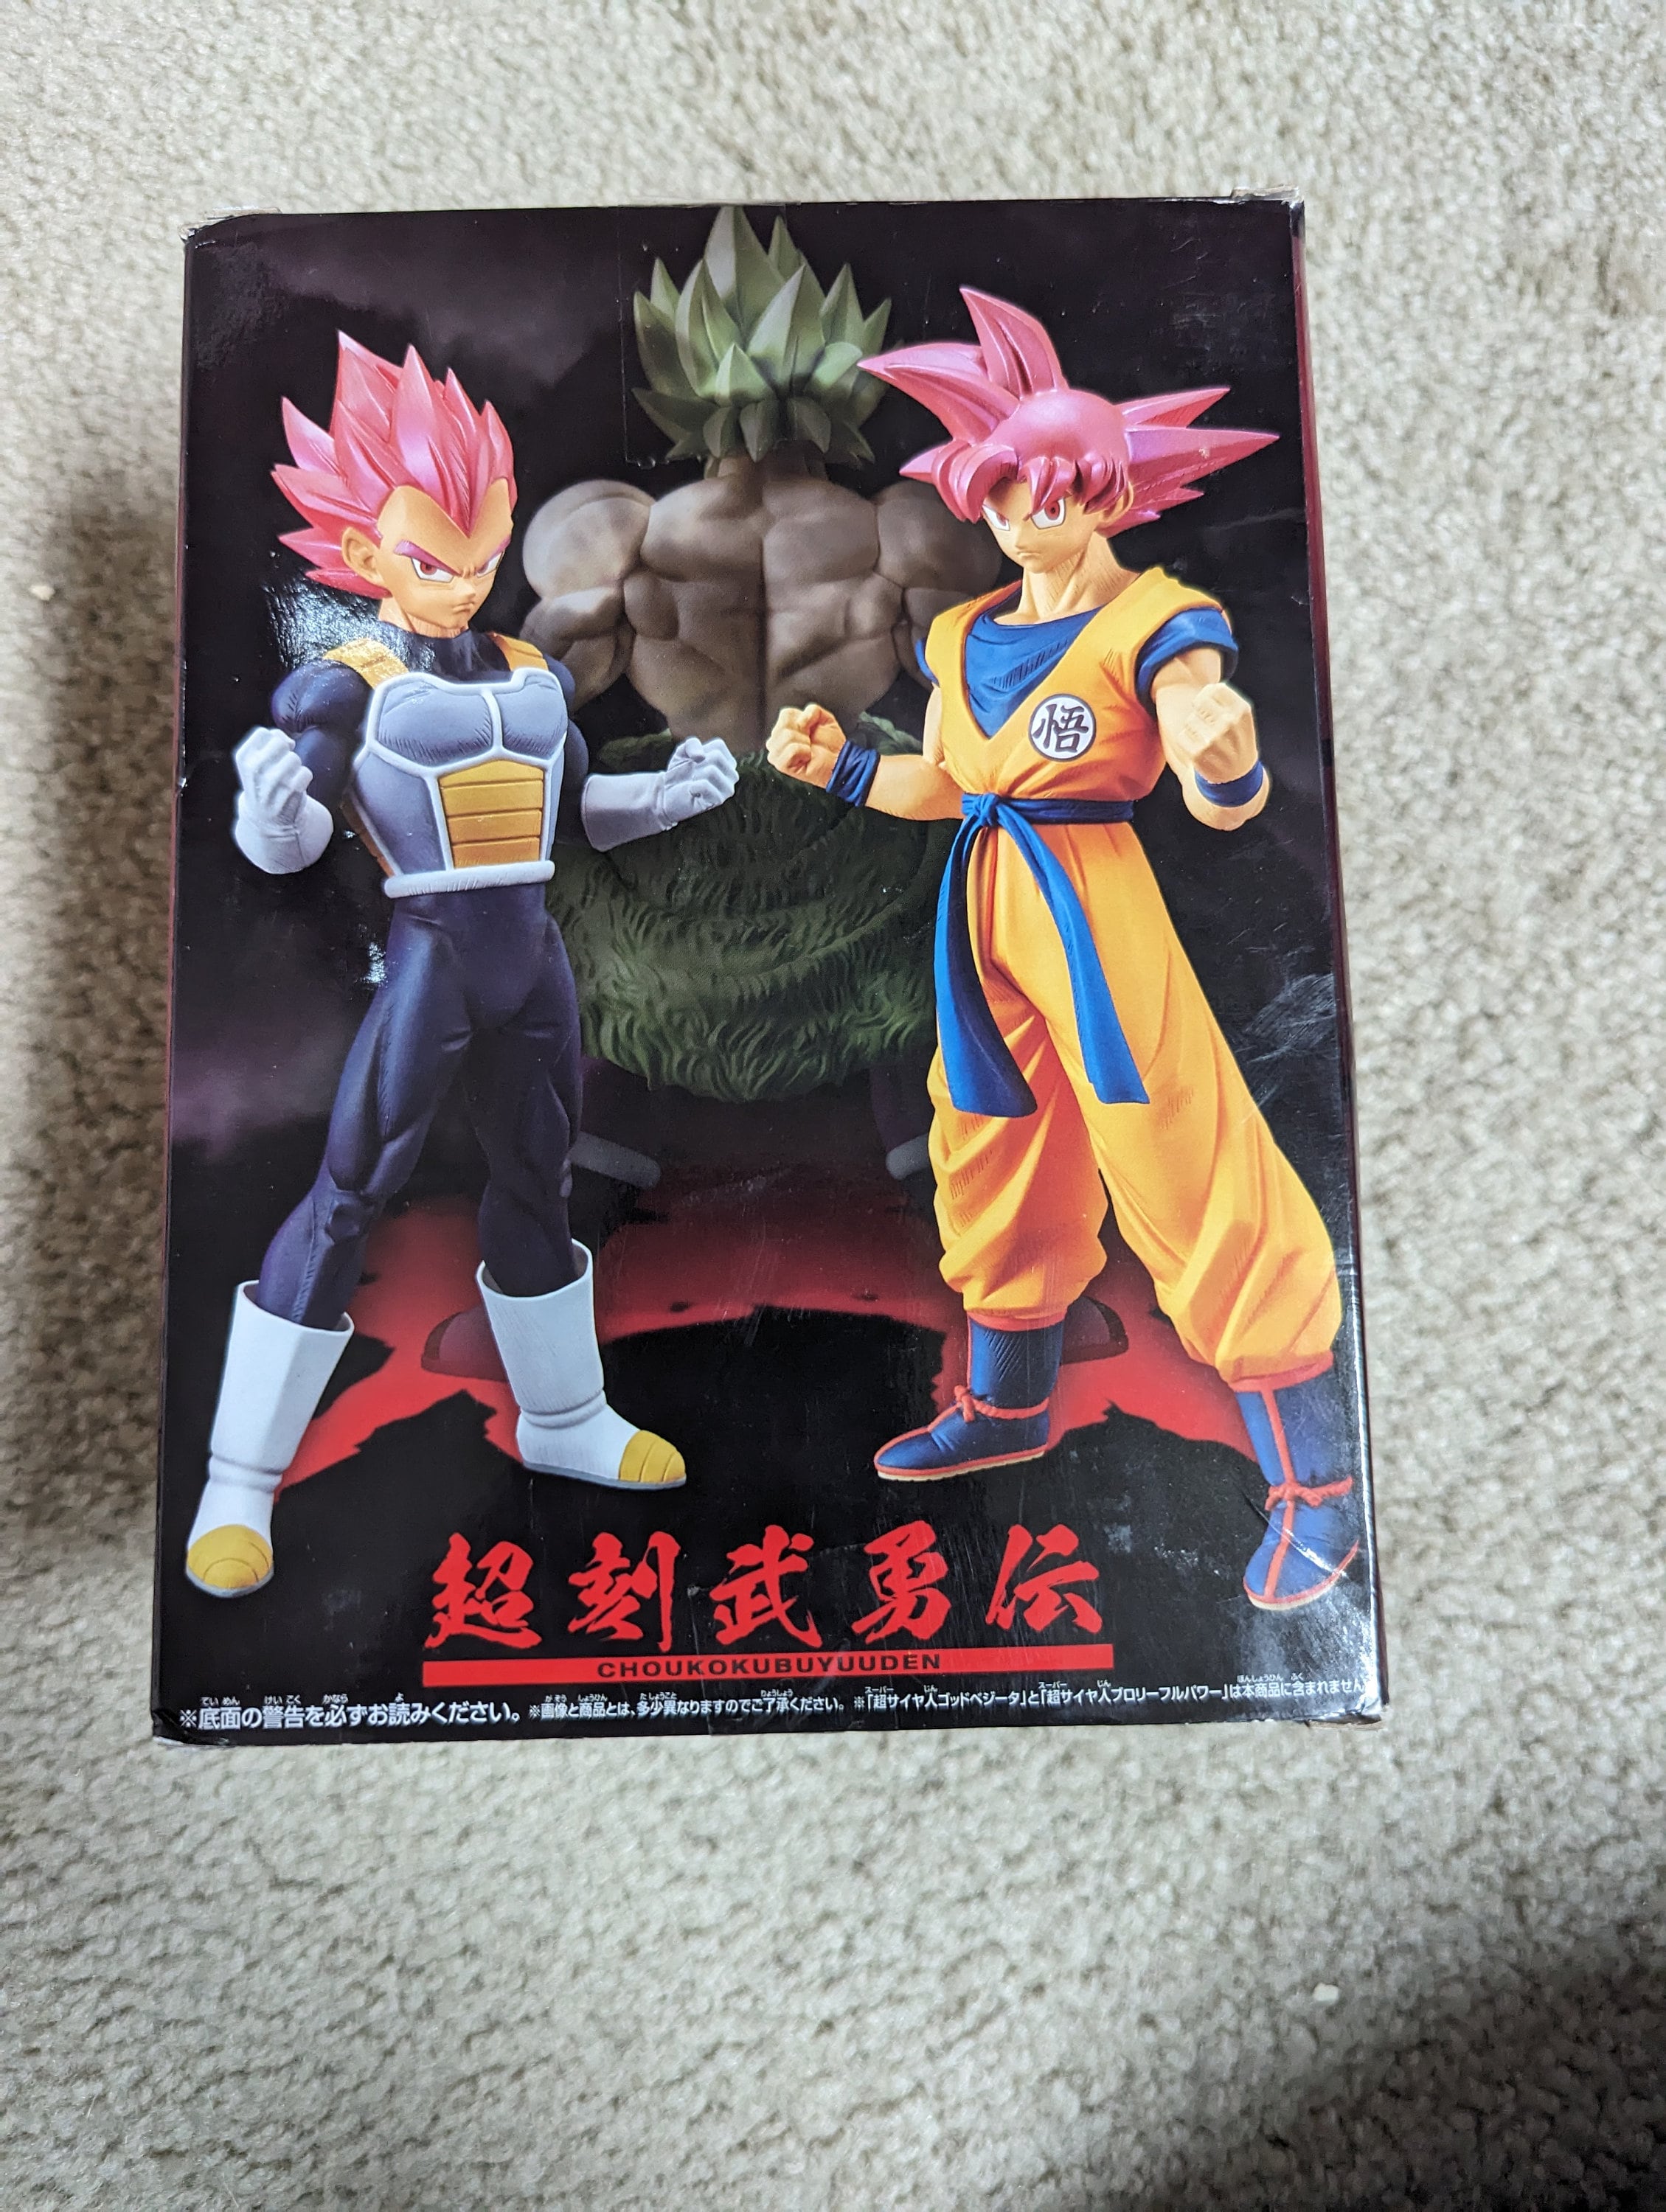 Boneco Goku Black Dragon Ball Z Articulado 28cm Bandai